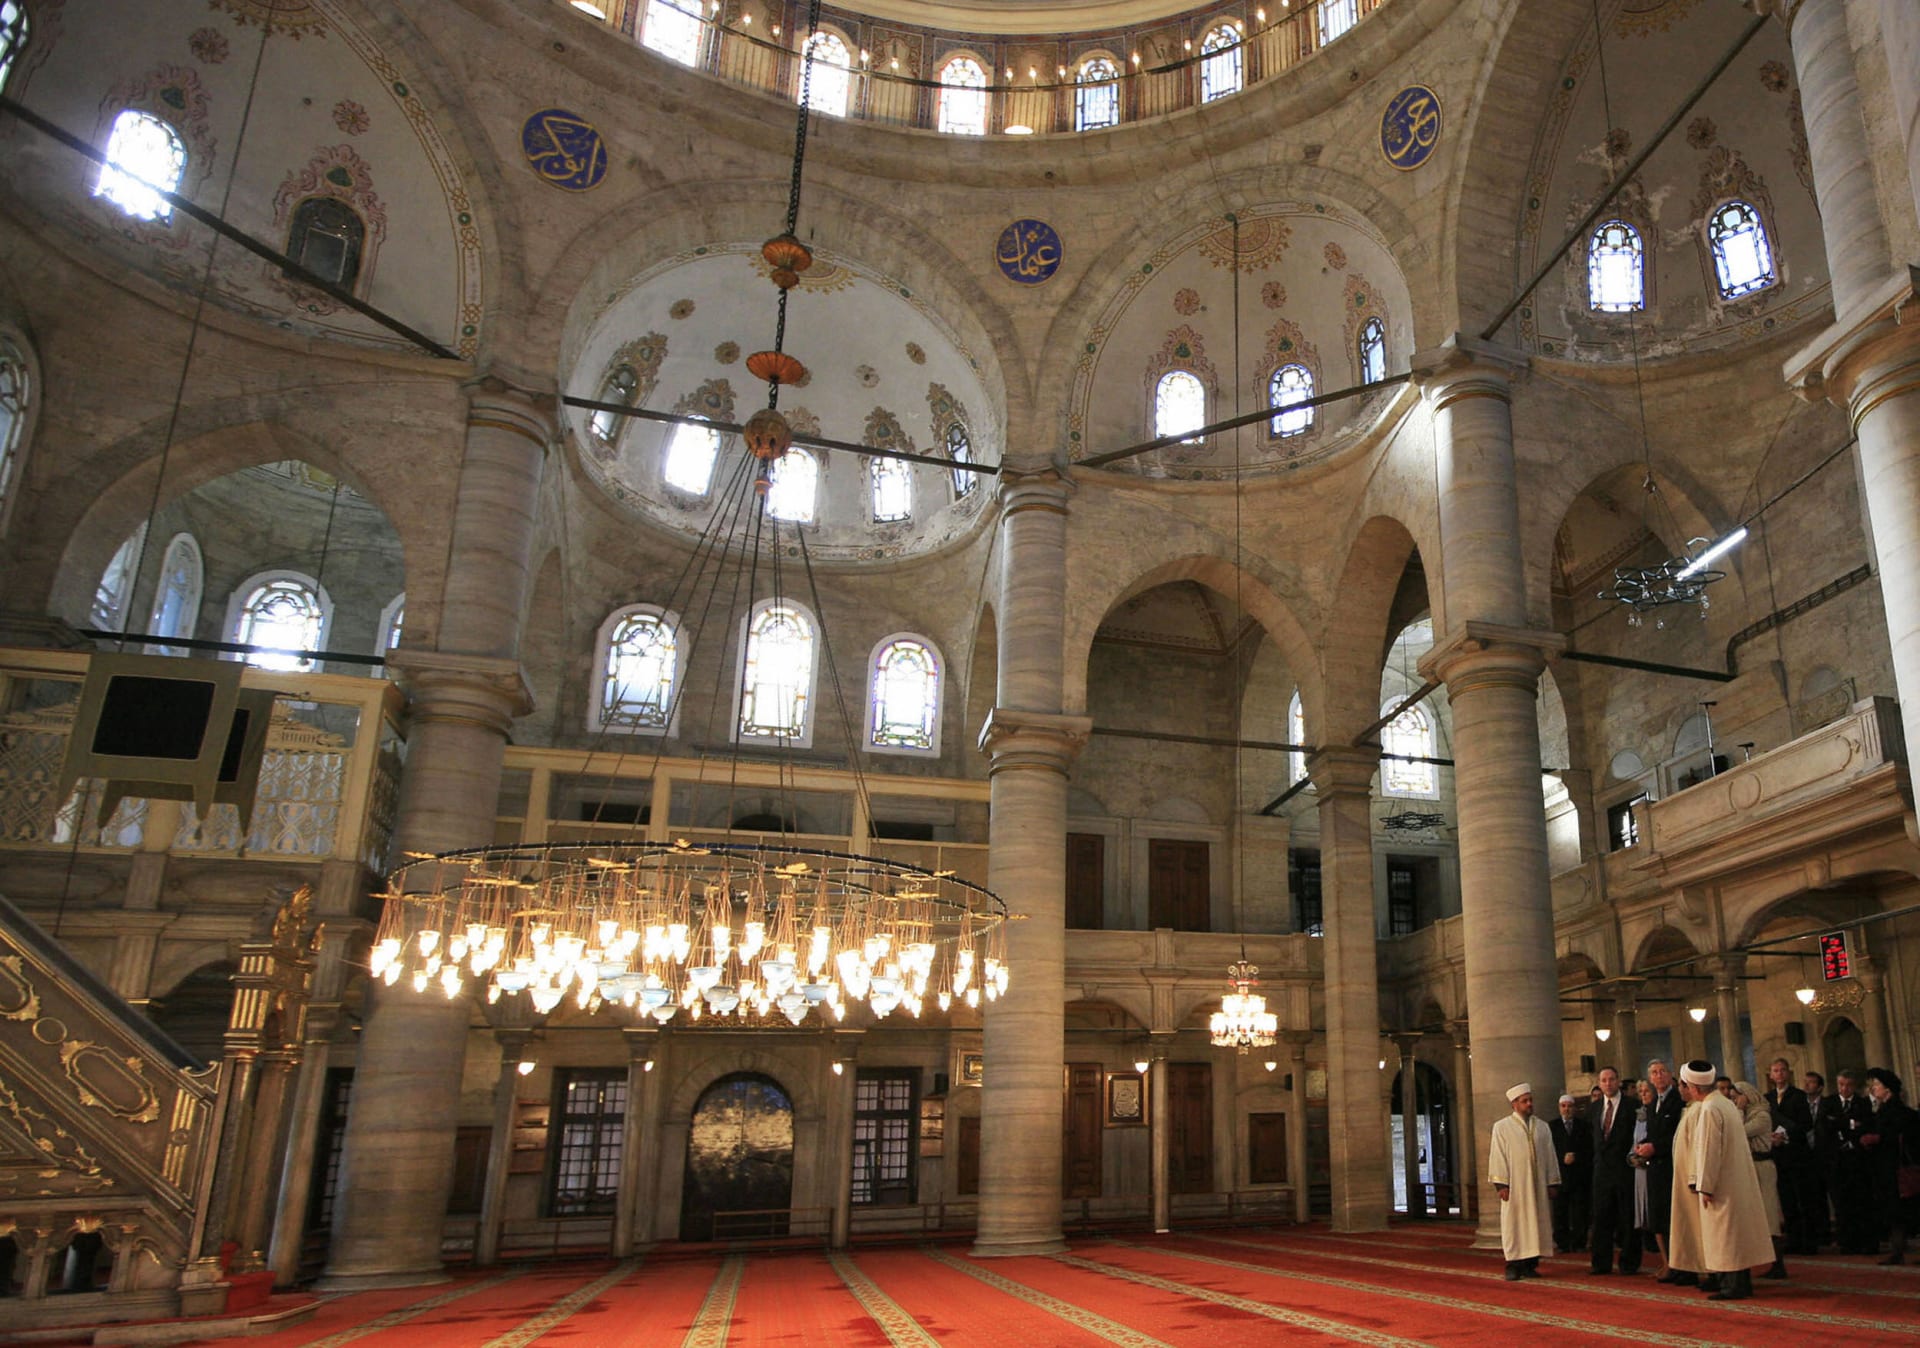 تركيا: افتتاح أول بنك إسلامي حكومي بالتزامن مع ذكرى "فتح القسطنطينية" على يد العثمانيين